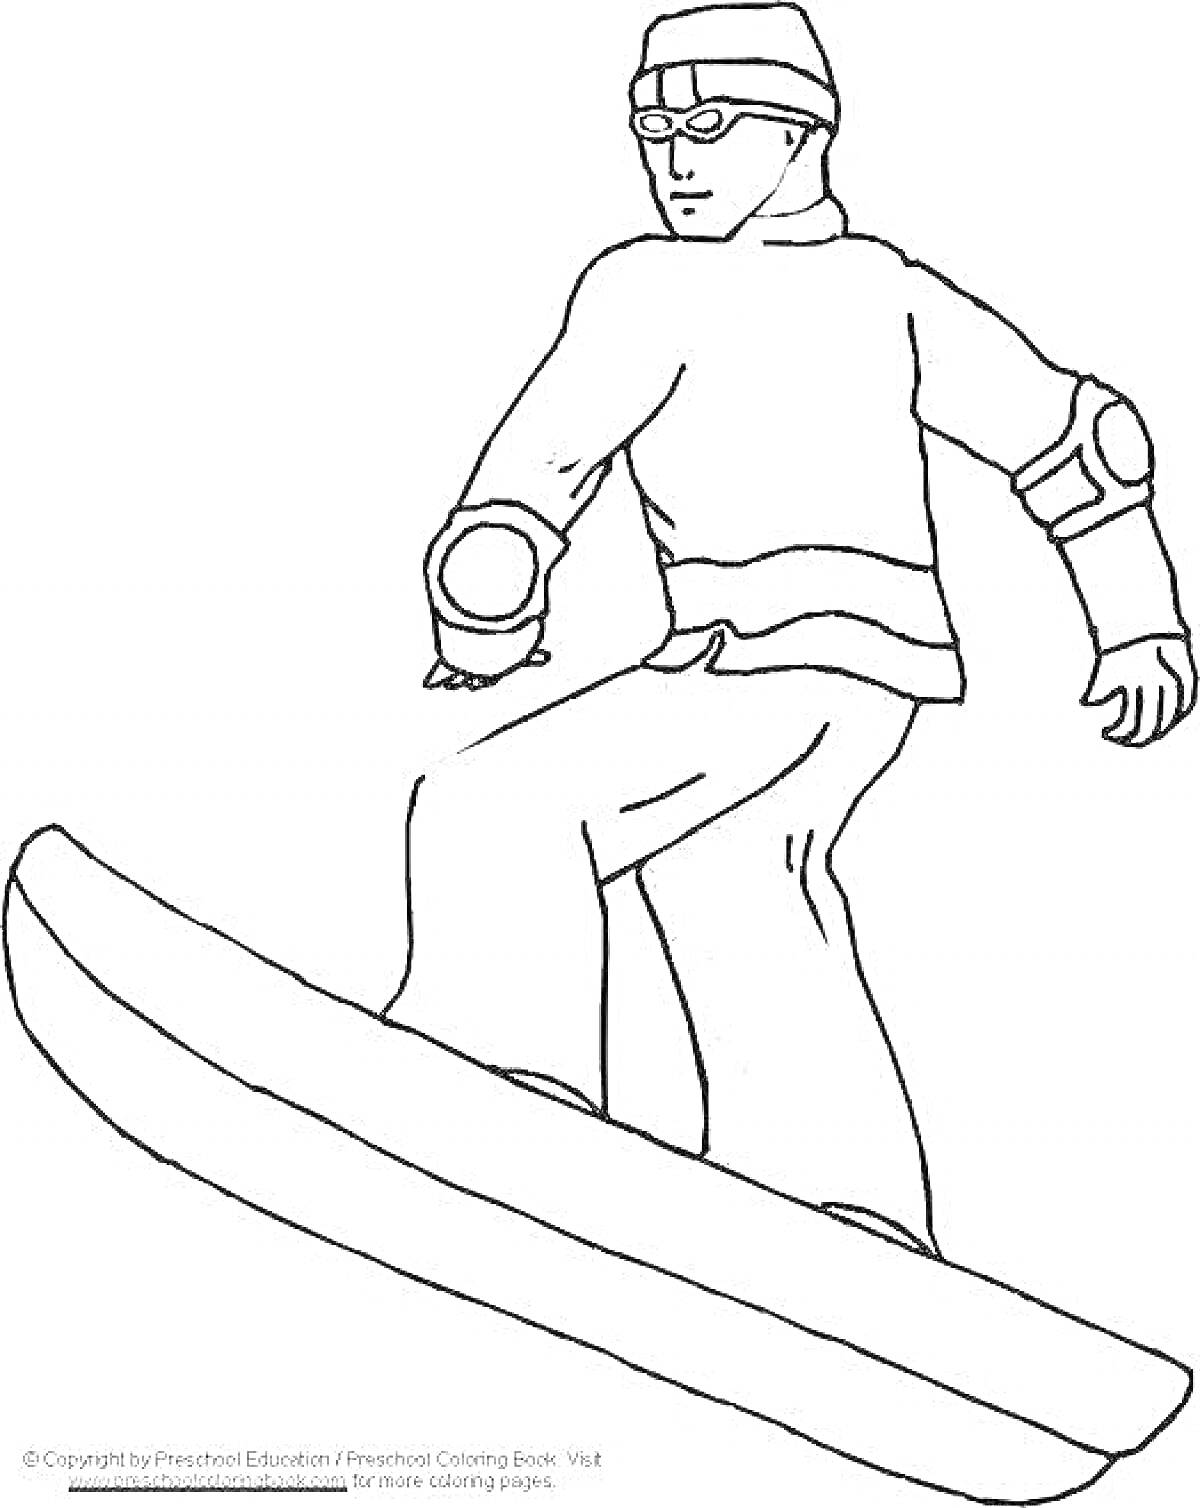 Раскраска Сноубордист в зимней одежде с защитными элементами